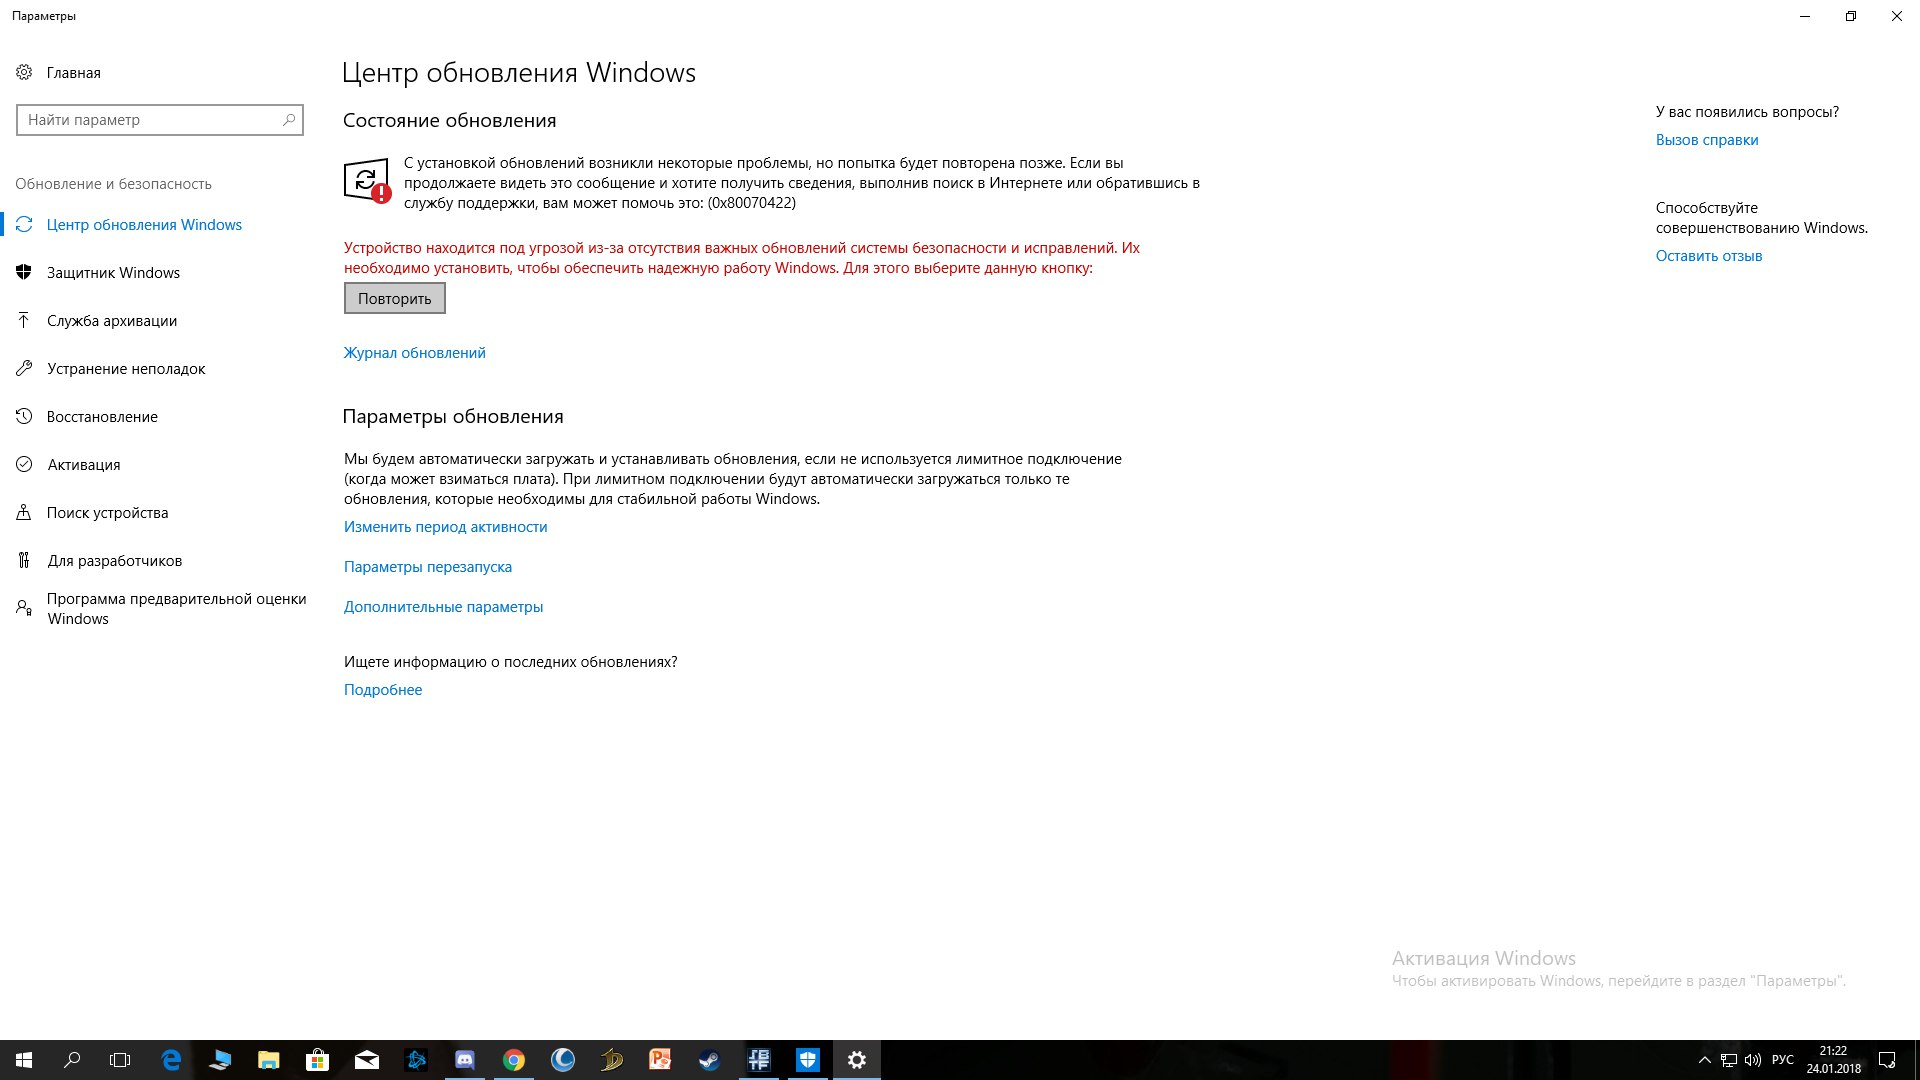 Иногда случается так, что по какой-то причине универсальные приложения Windows 10 перестают обновляться или вообще нормально работать